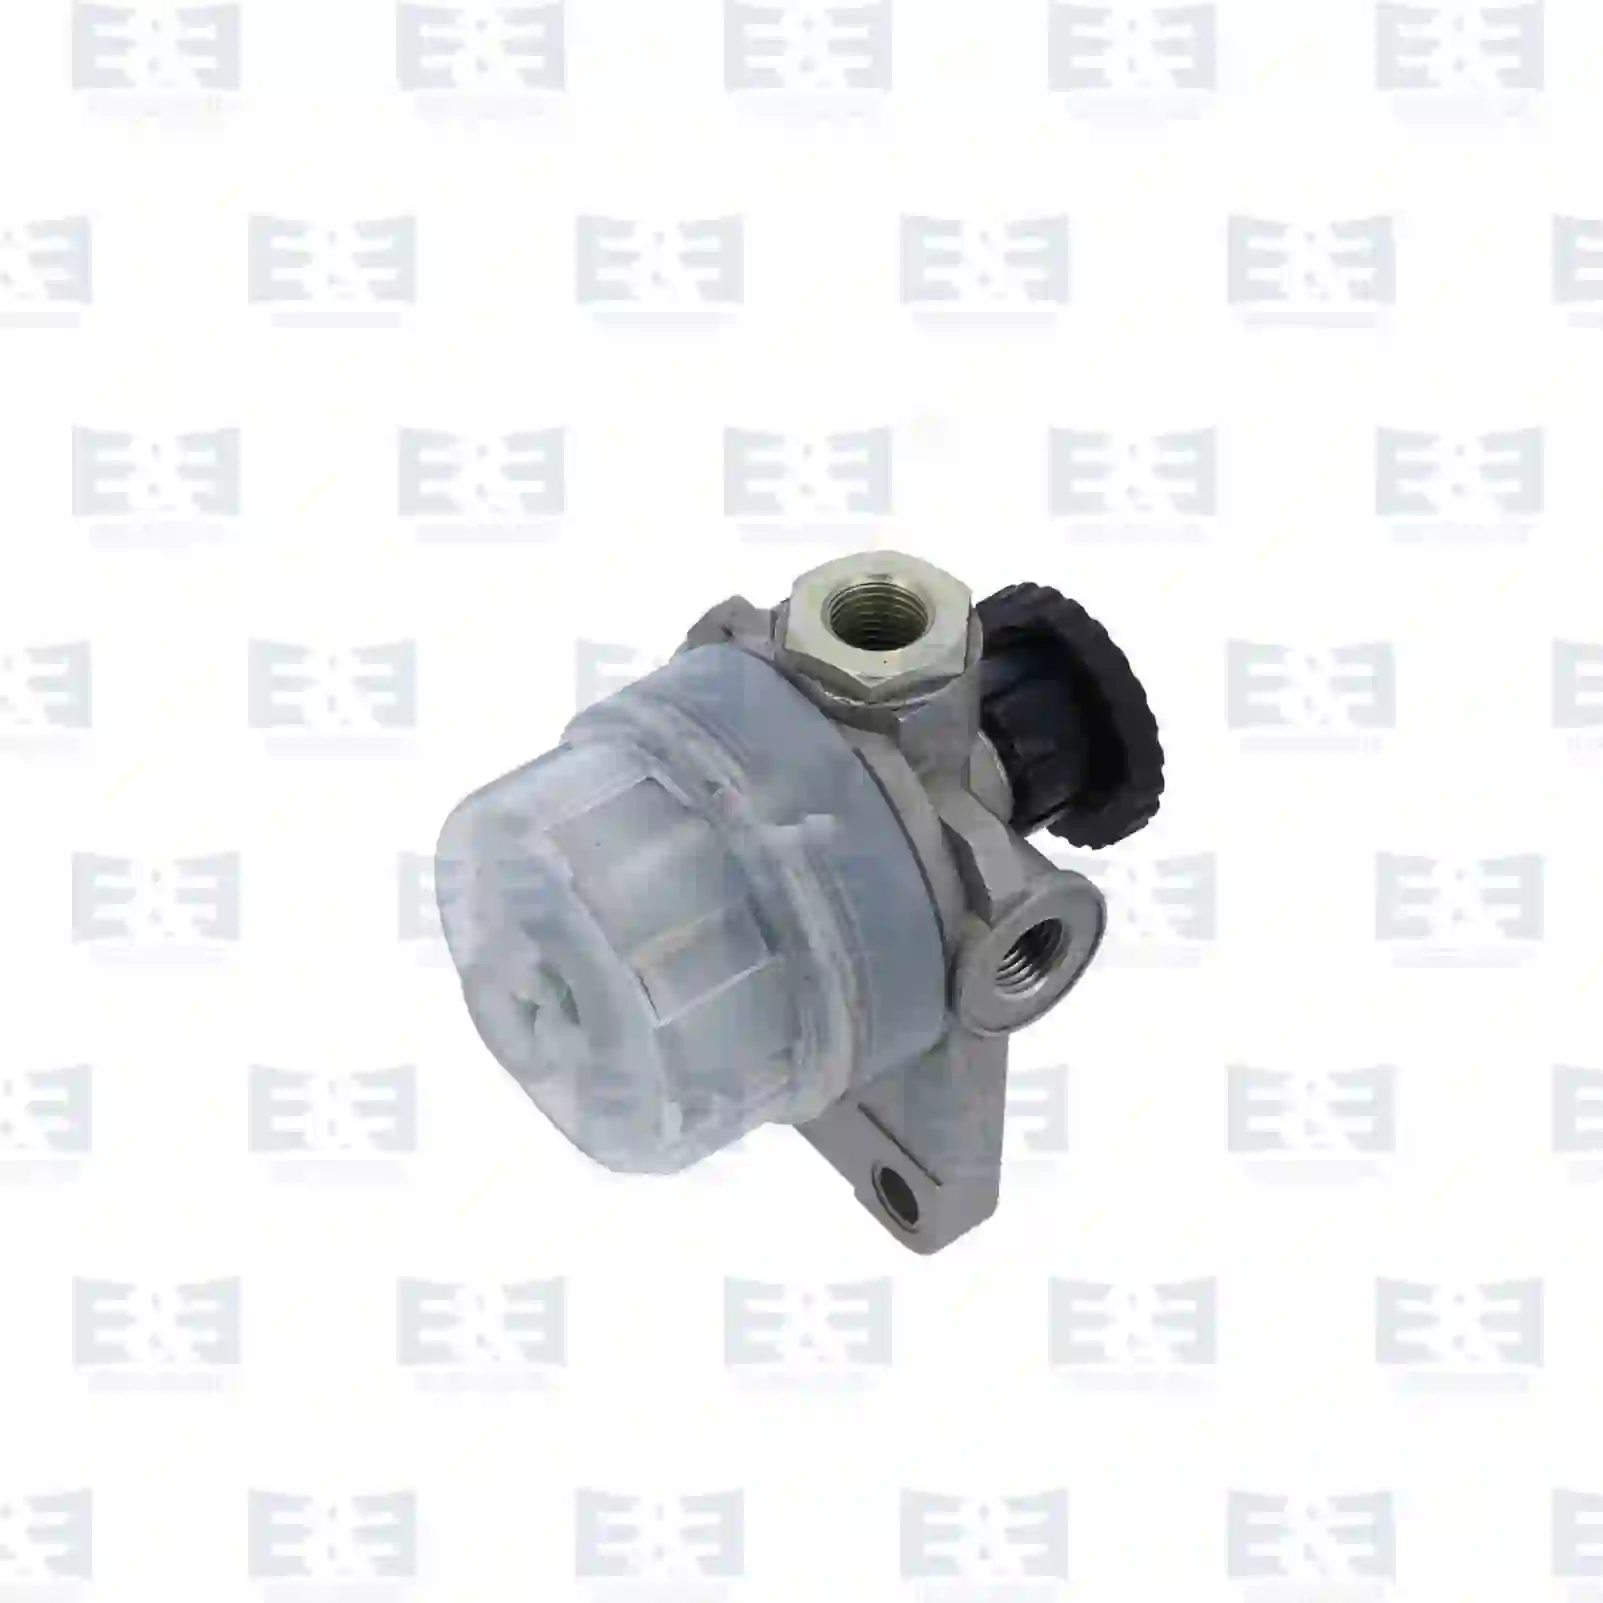  Fuel prefilter, with fuel pump || E&E Truck Spare Parts | Truck Spare Parts, Auotomotive Spare Parts